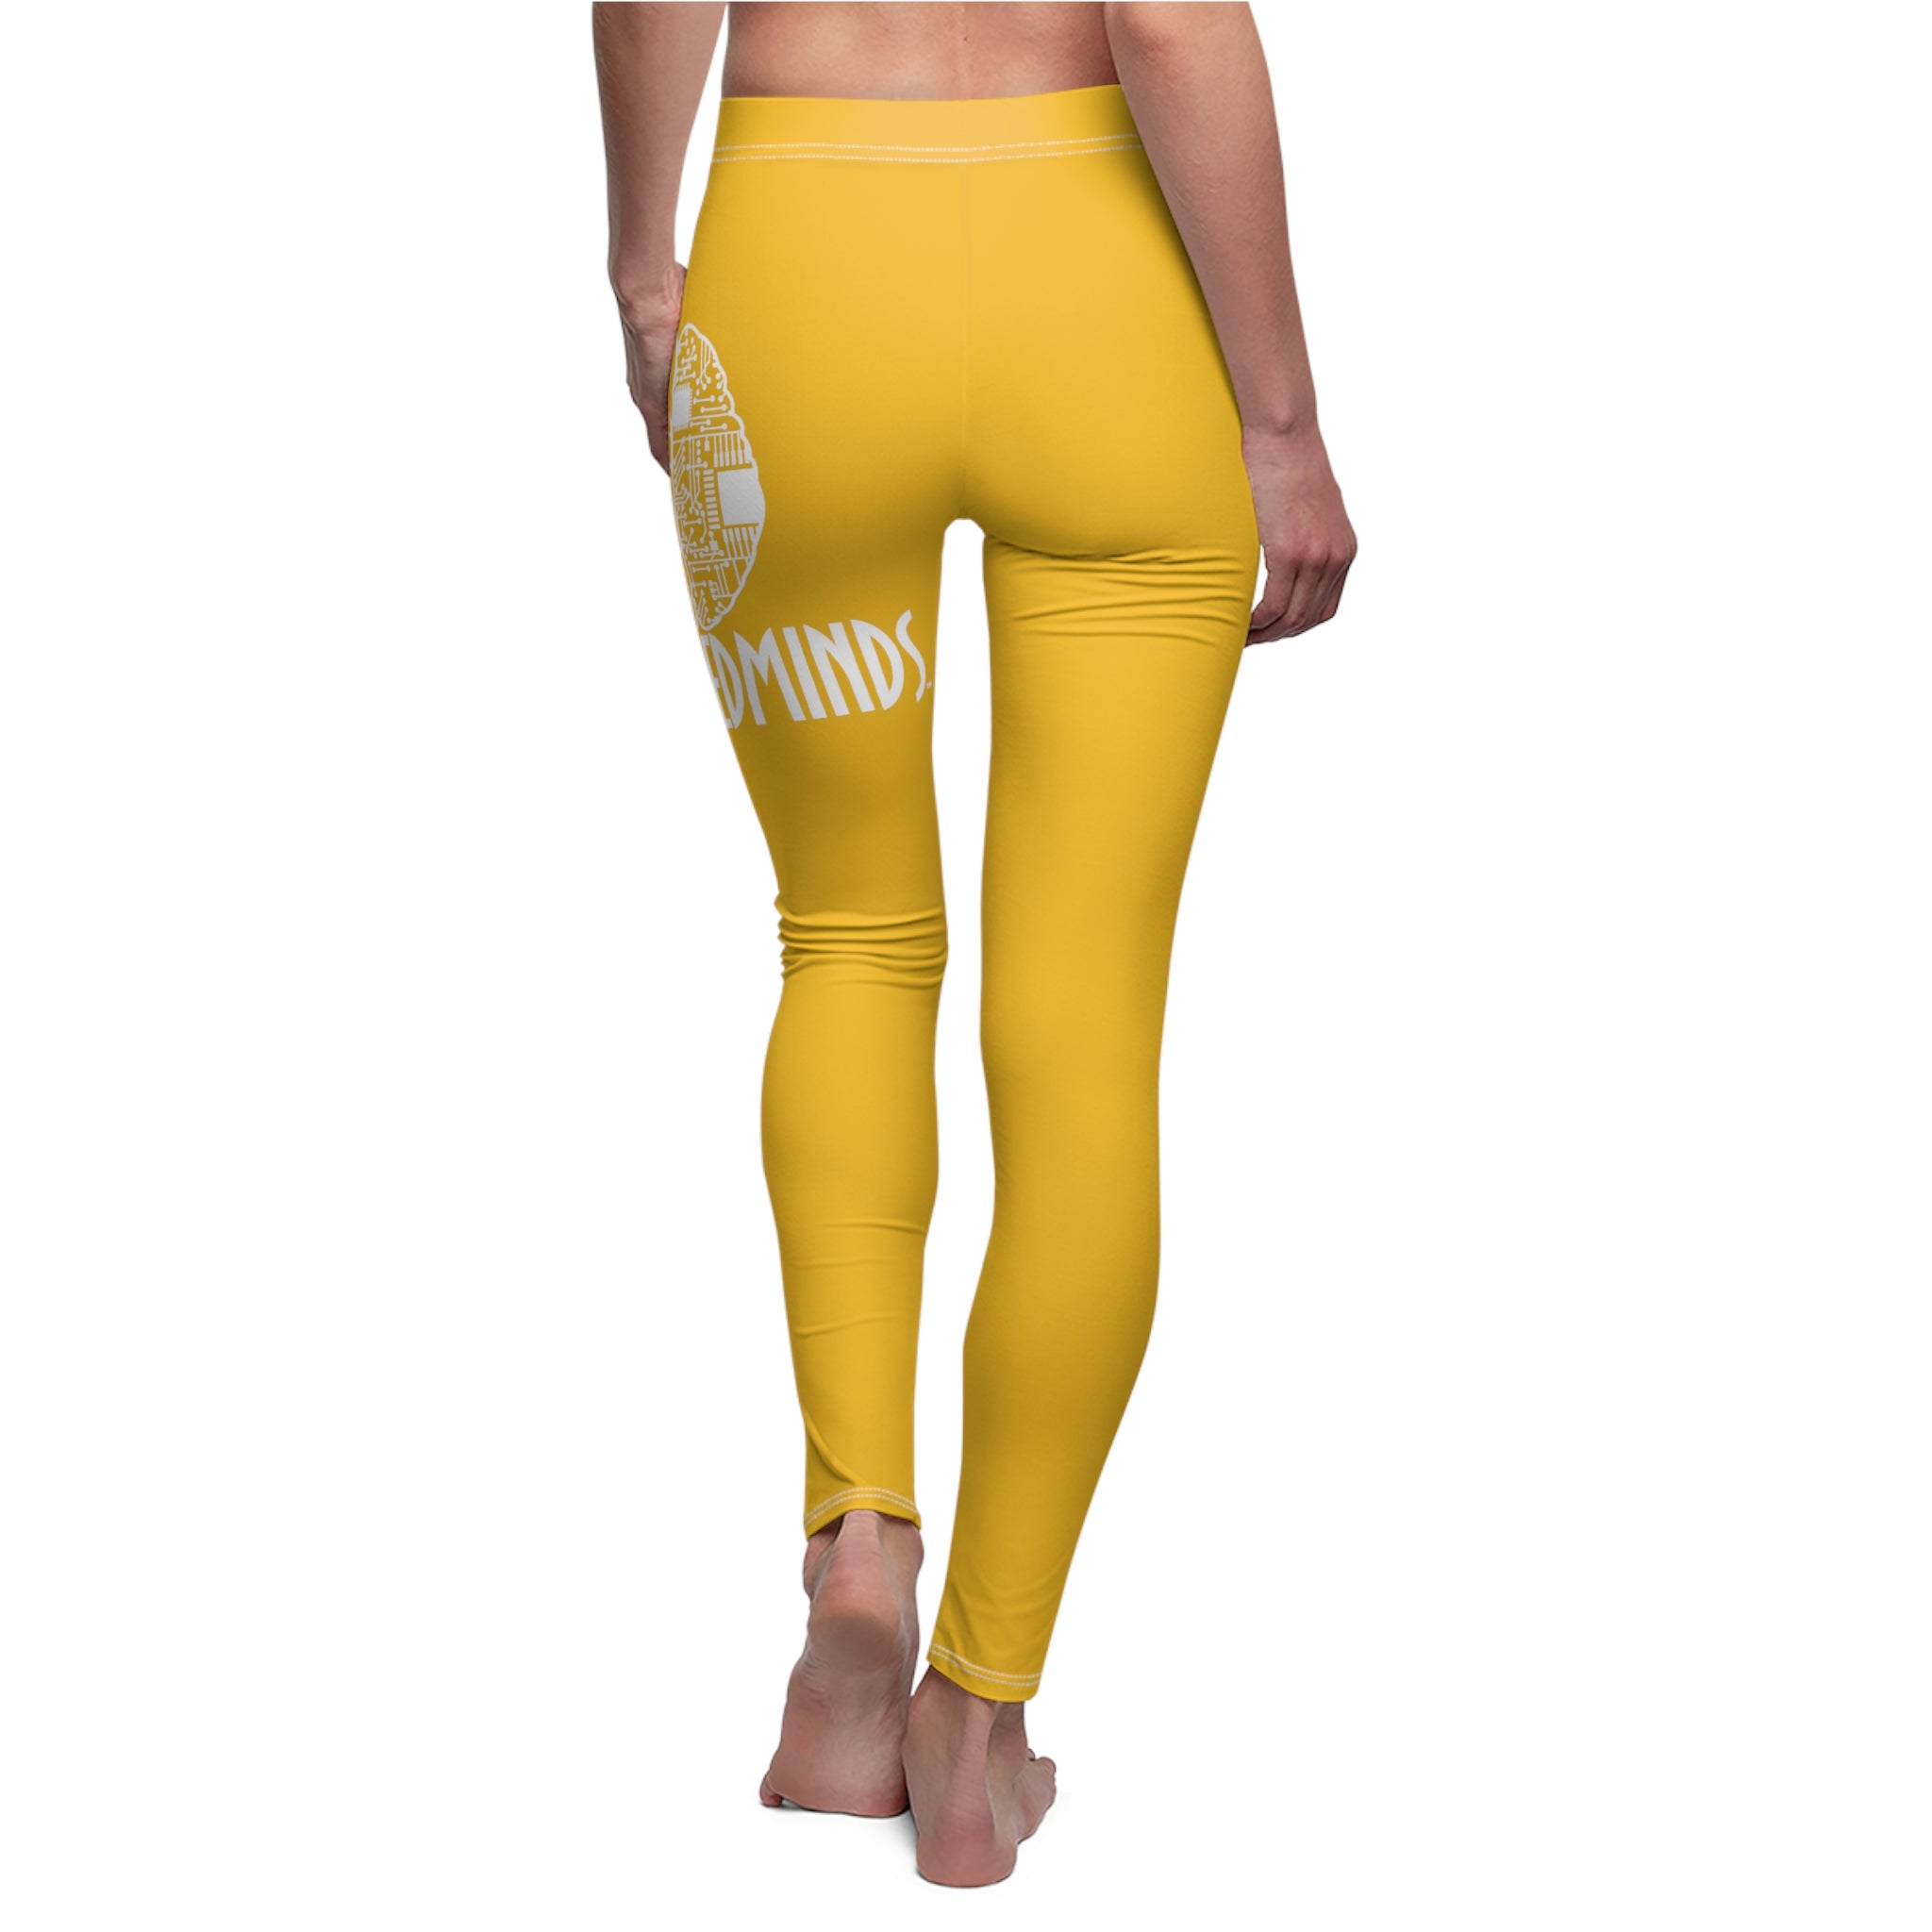 CombinedMinds Women's Cut & Sew Casual Leggings-Yellow/White Logo